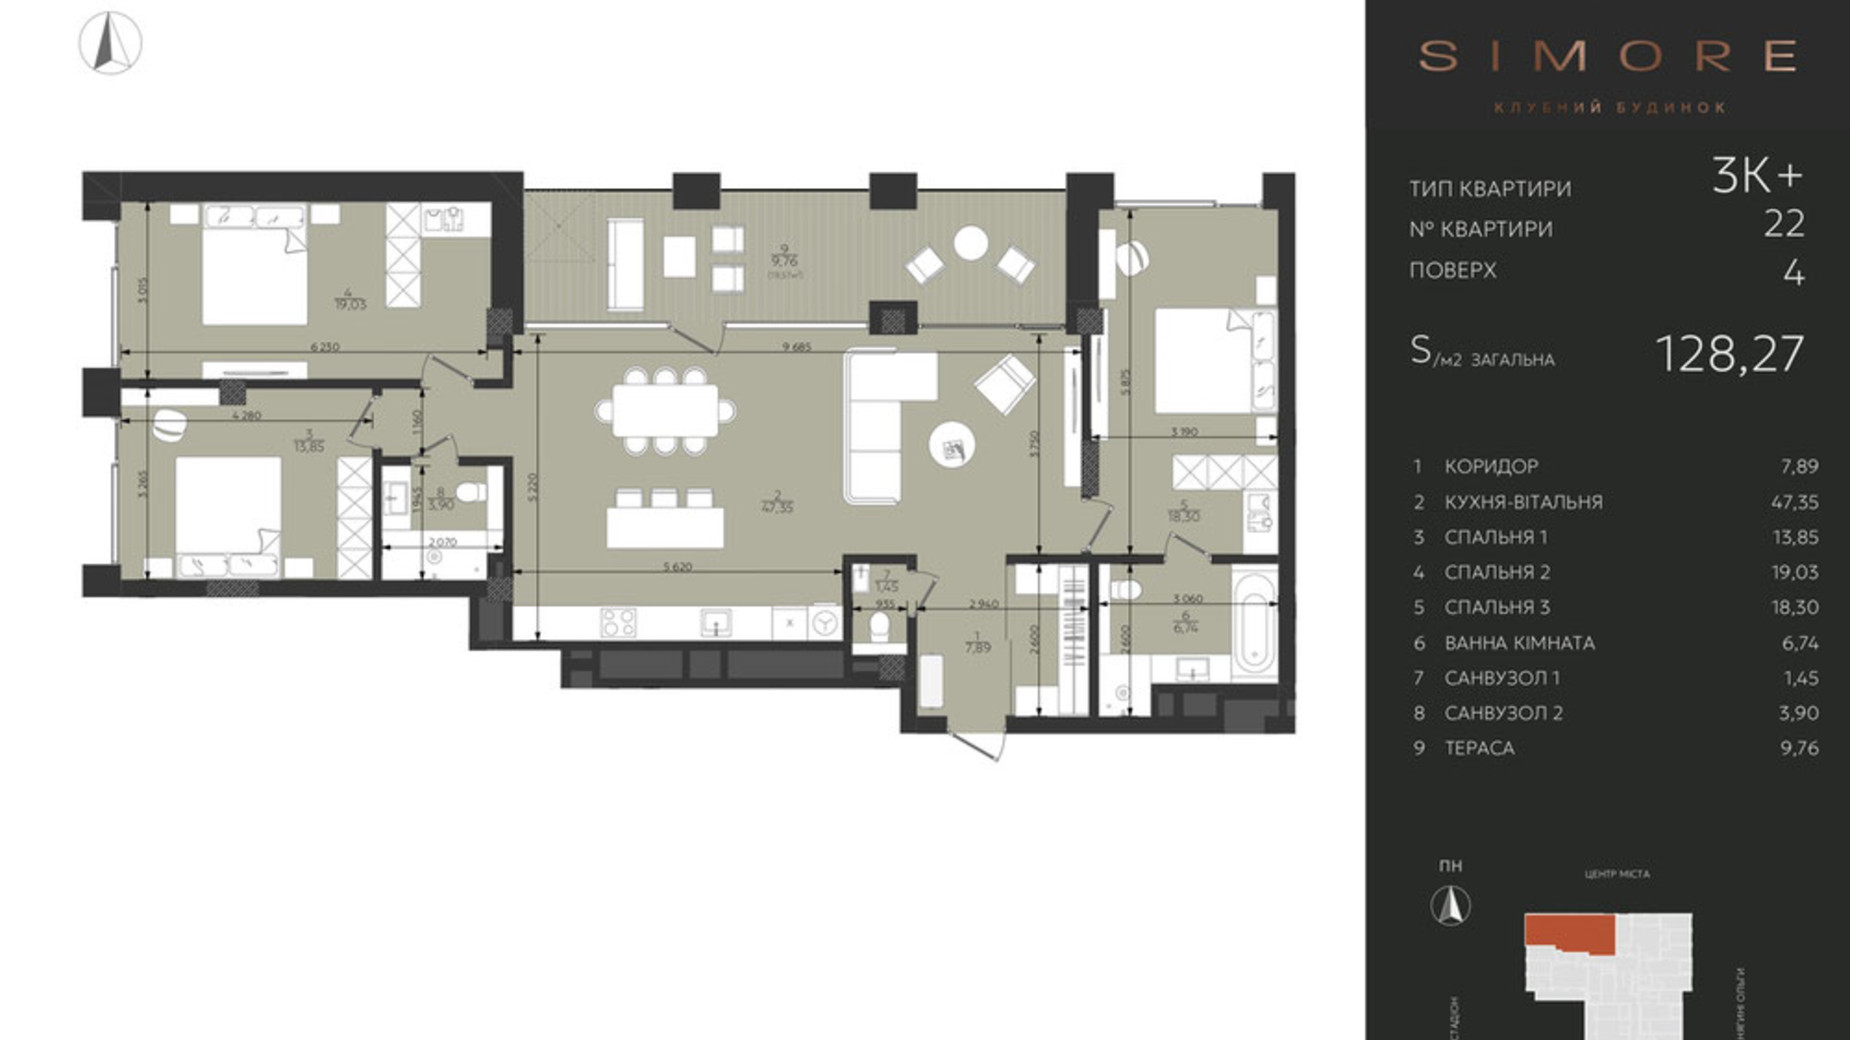 Планування 3-кімнатної квартири в Клубний будинок Simore 128.27 м², фото 694203